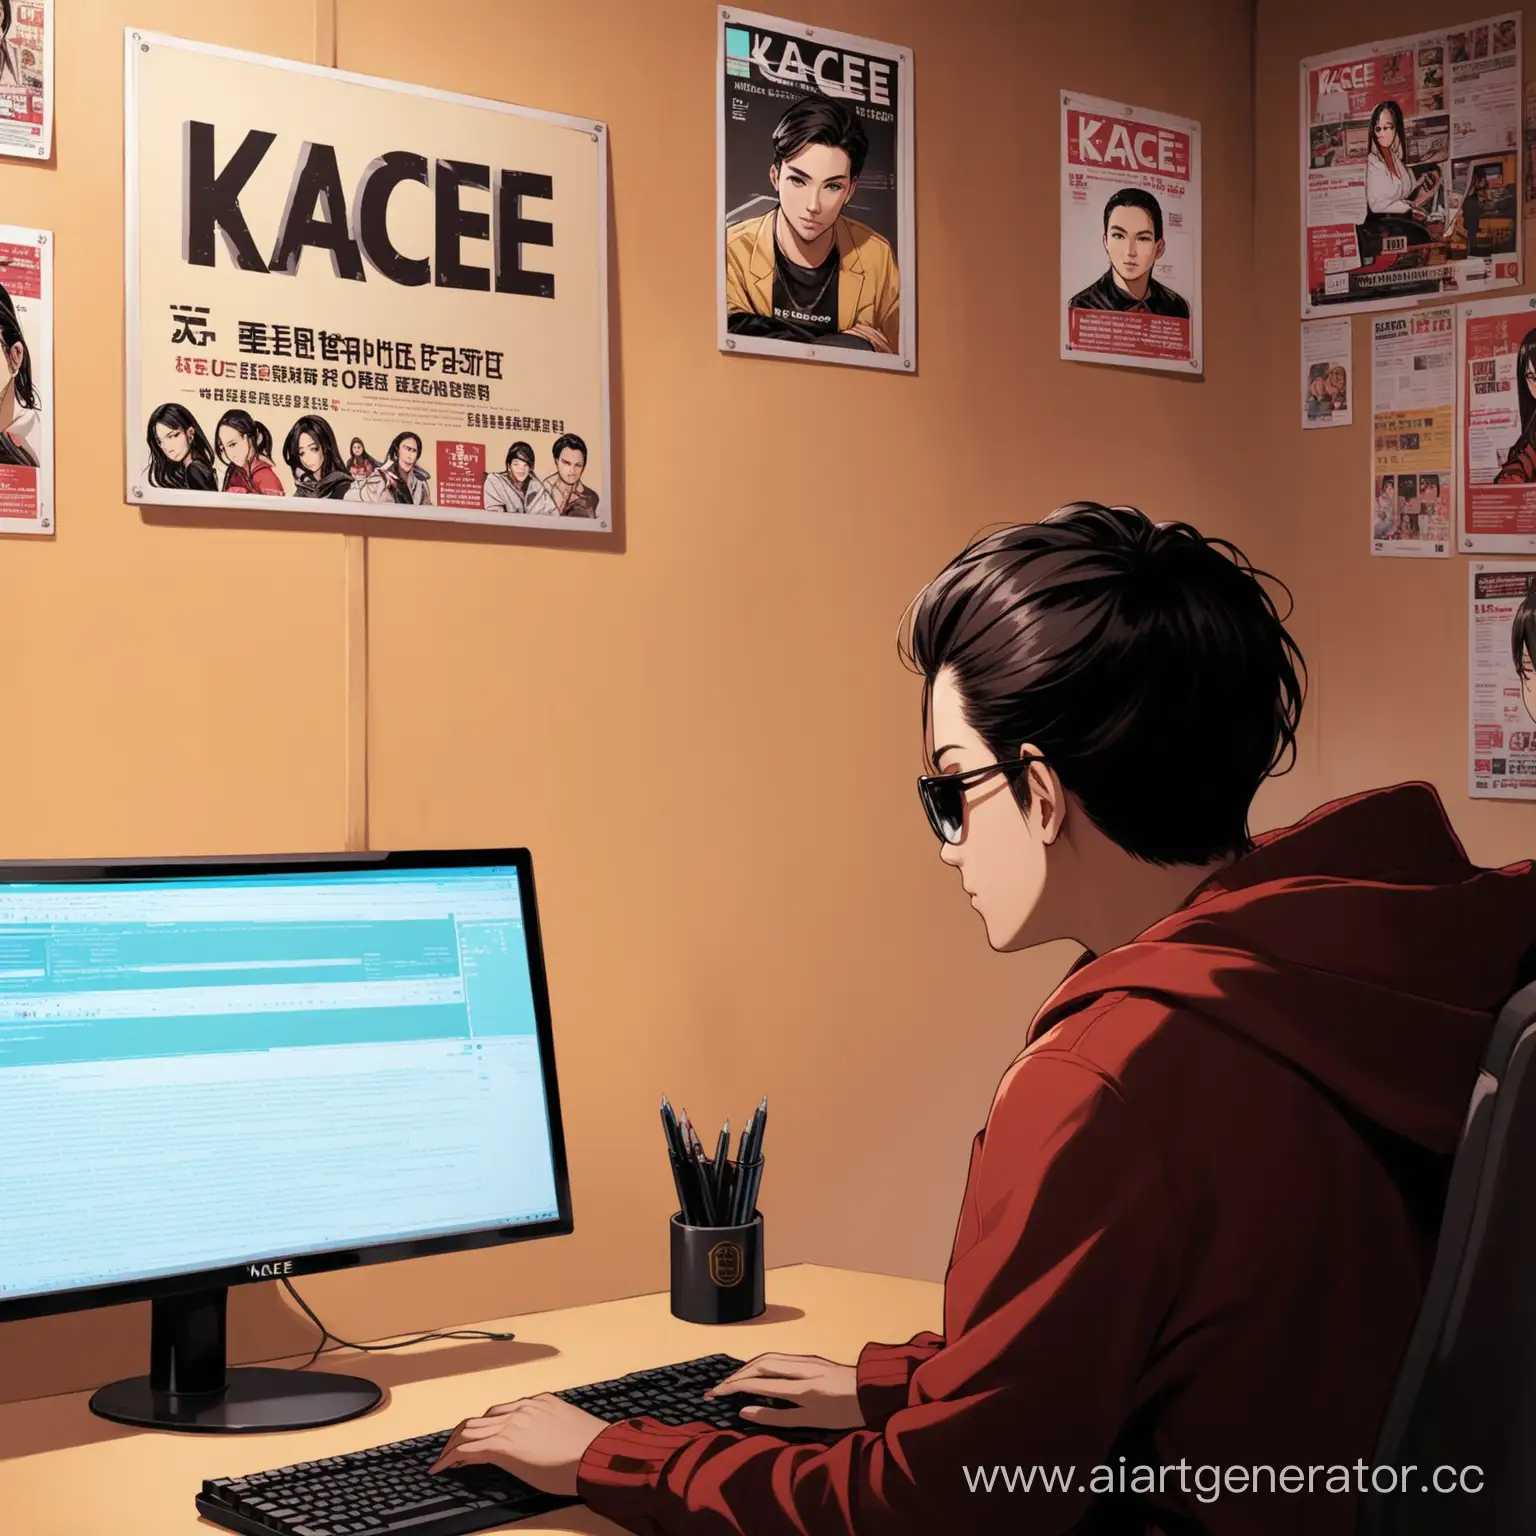 человек за компьютером, на фоне взывы, на экране надпись "Kacee"